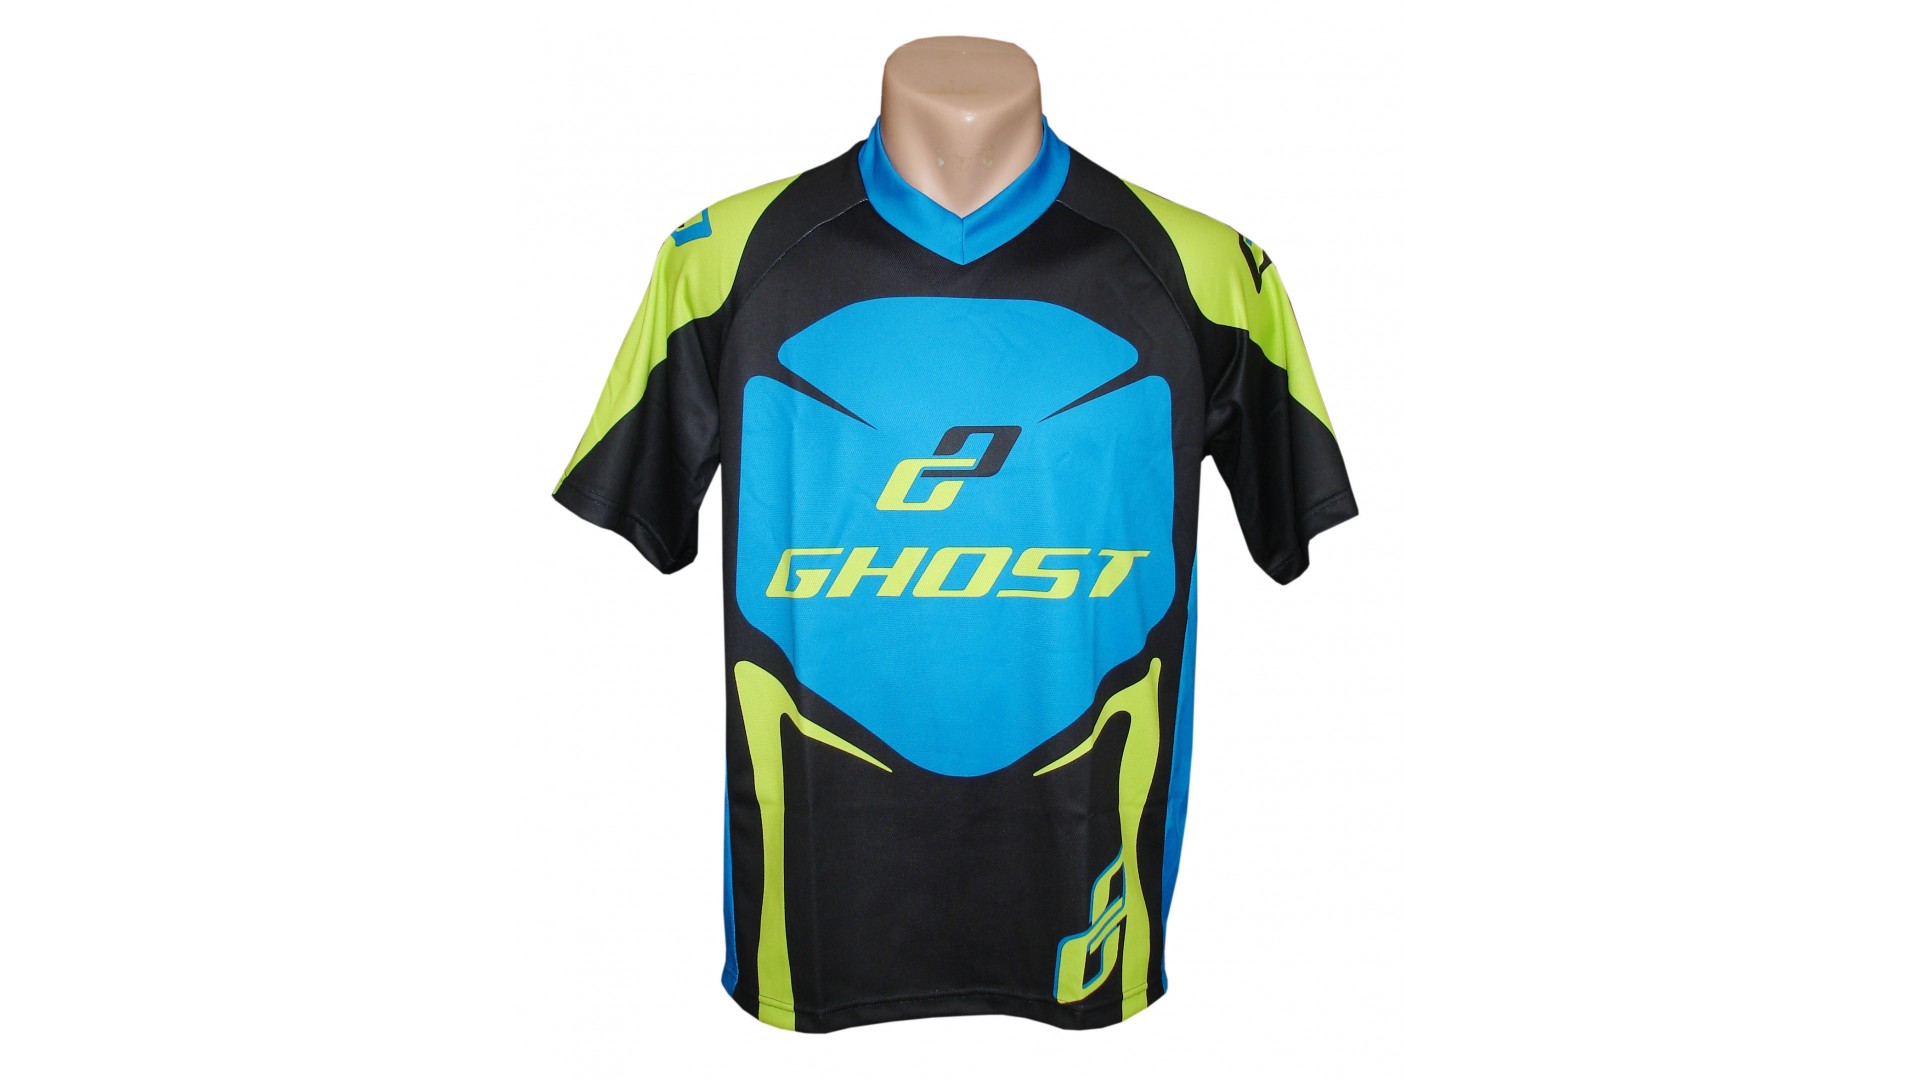 Веломайка Ghost с коротким рукавом black/blue/green год 2014